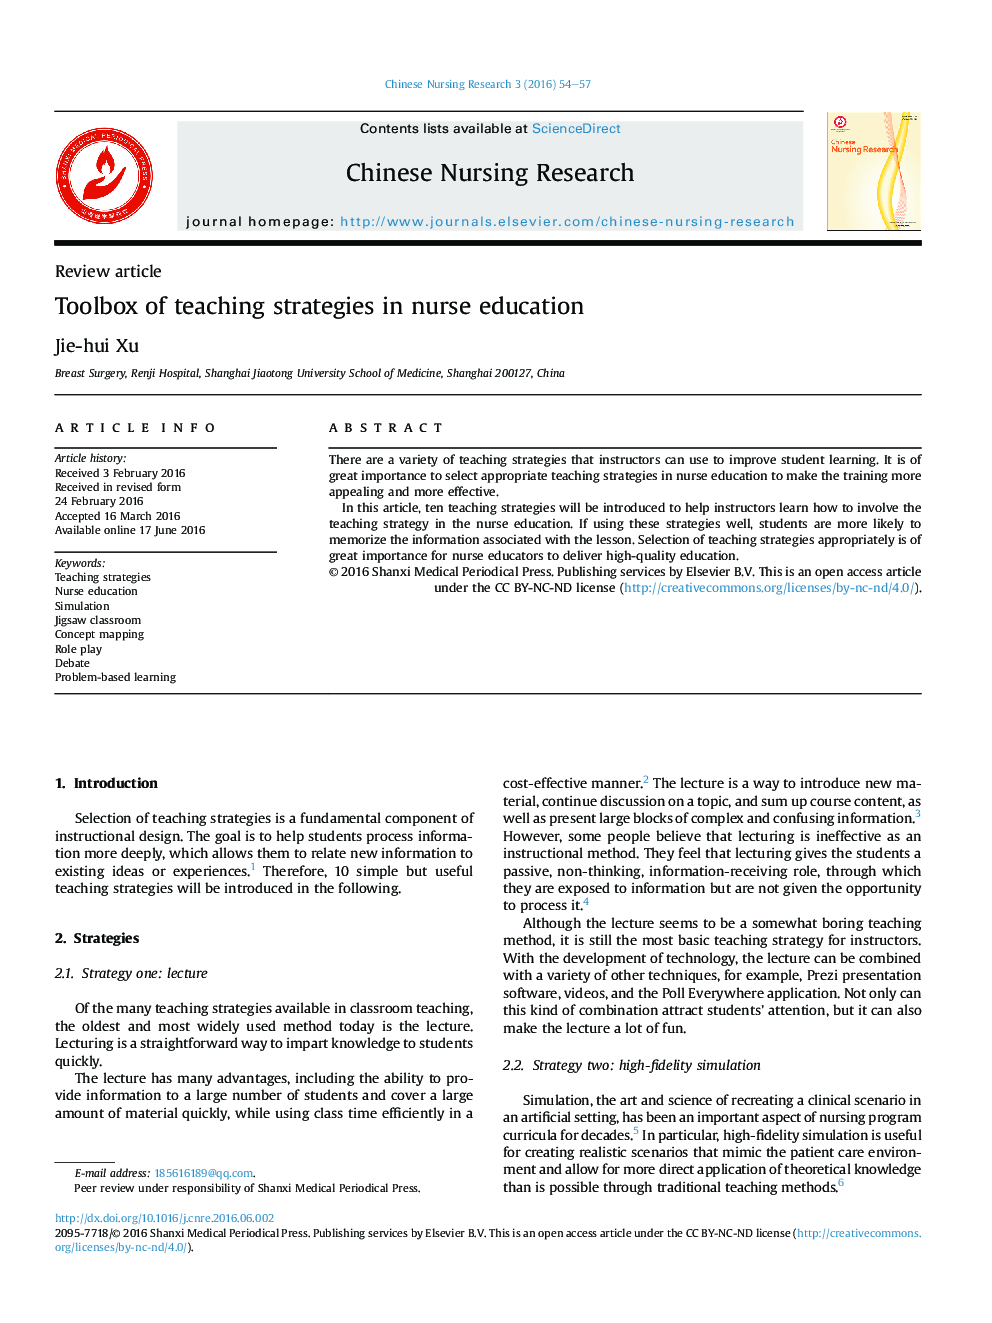 Toolbox of teaching strategies in nurse education 